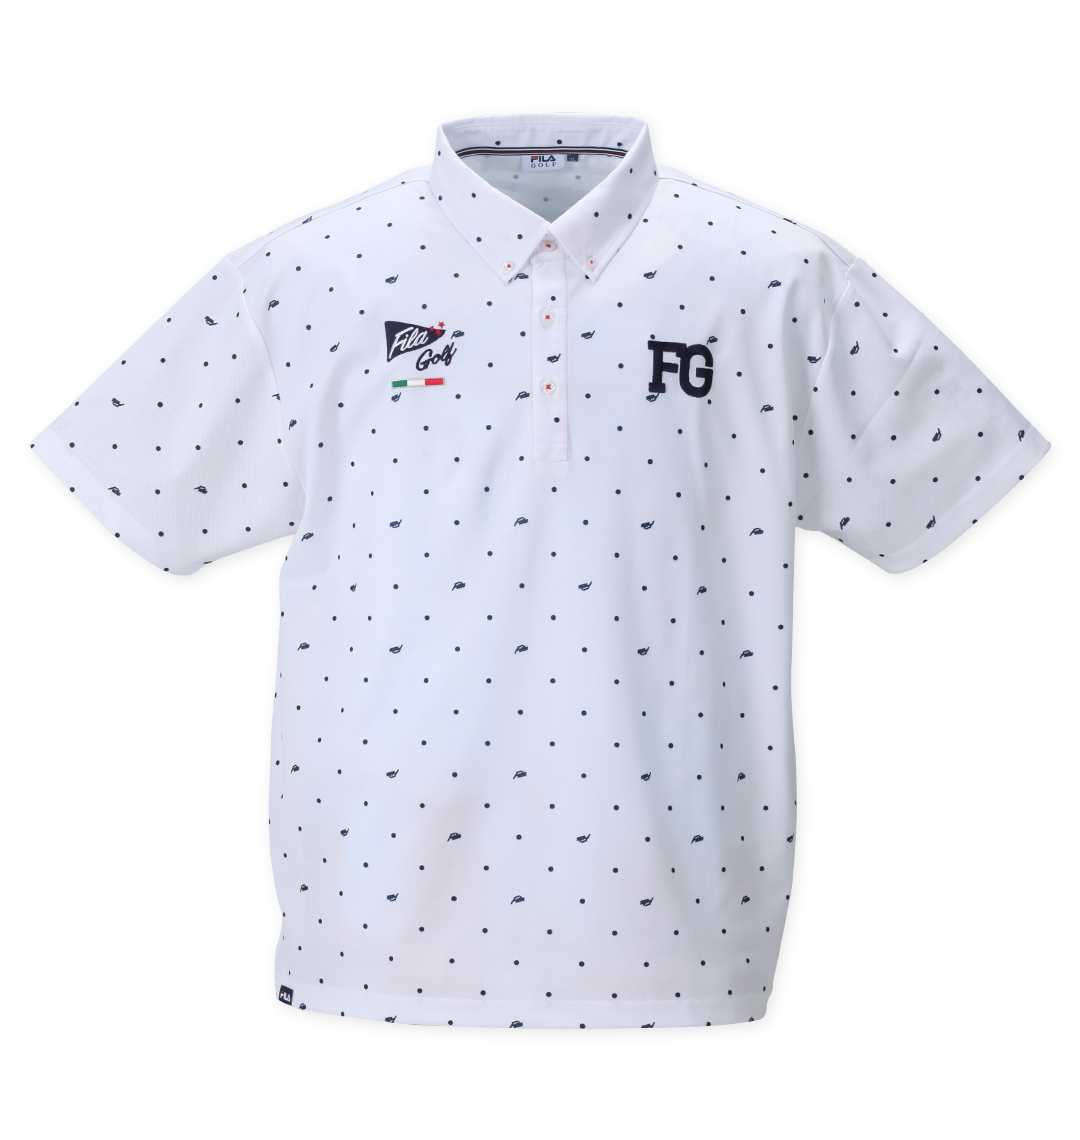 ドットプリント半袖シャツ | FILA GOLF (フィラゴルフ) | 大きいサイズのメンズ服通販 ミッド・インターナショナル |  商品番号1278-2500